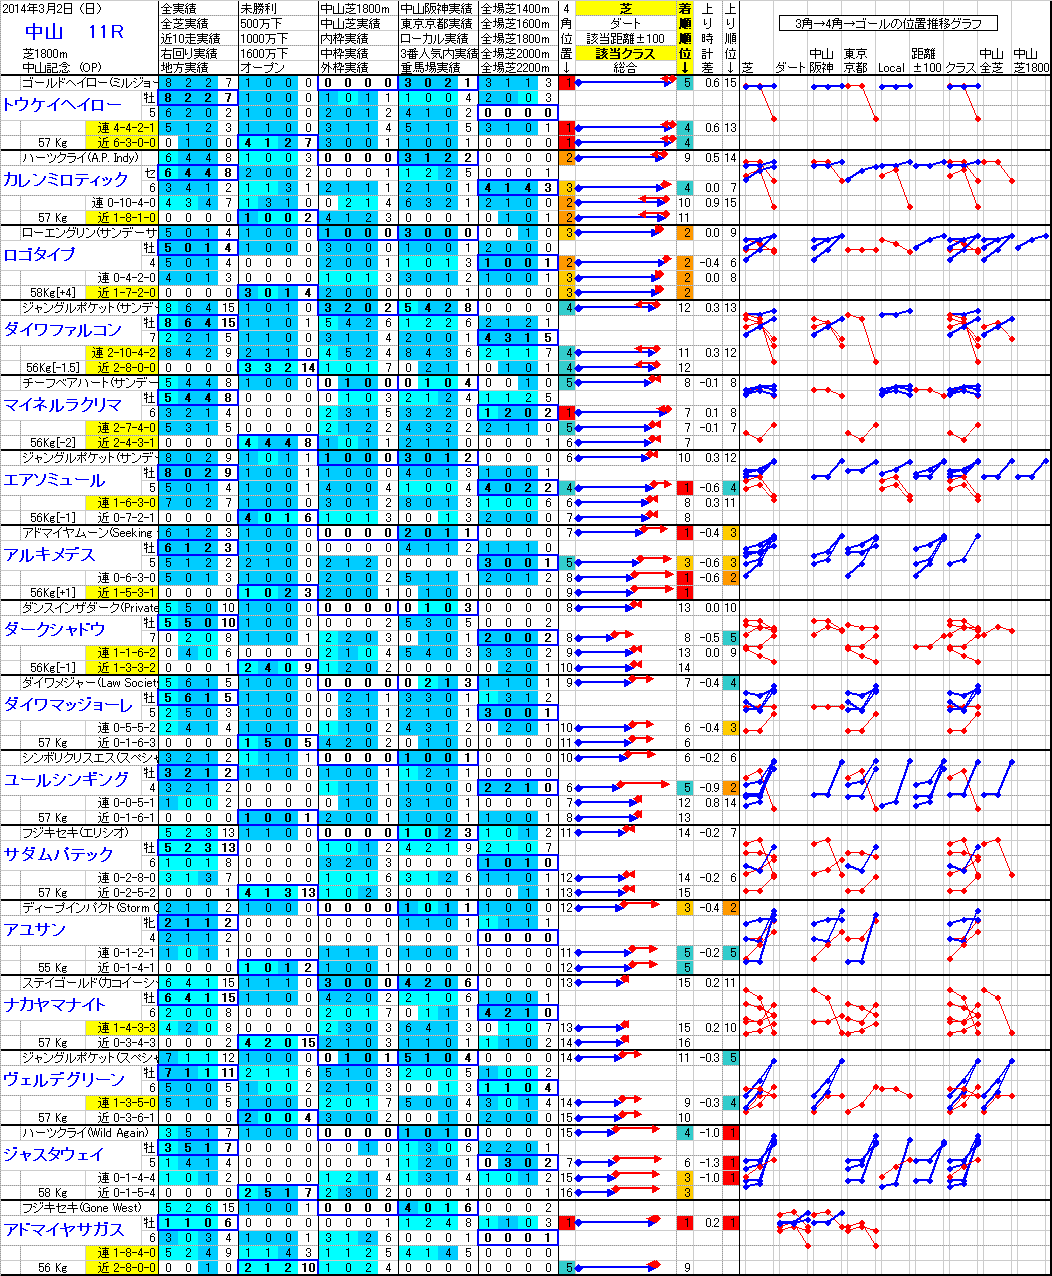 中山 2014年3月2日 （日） ： 11R － 分析データ